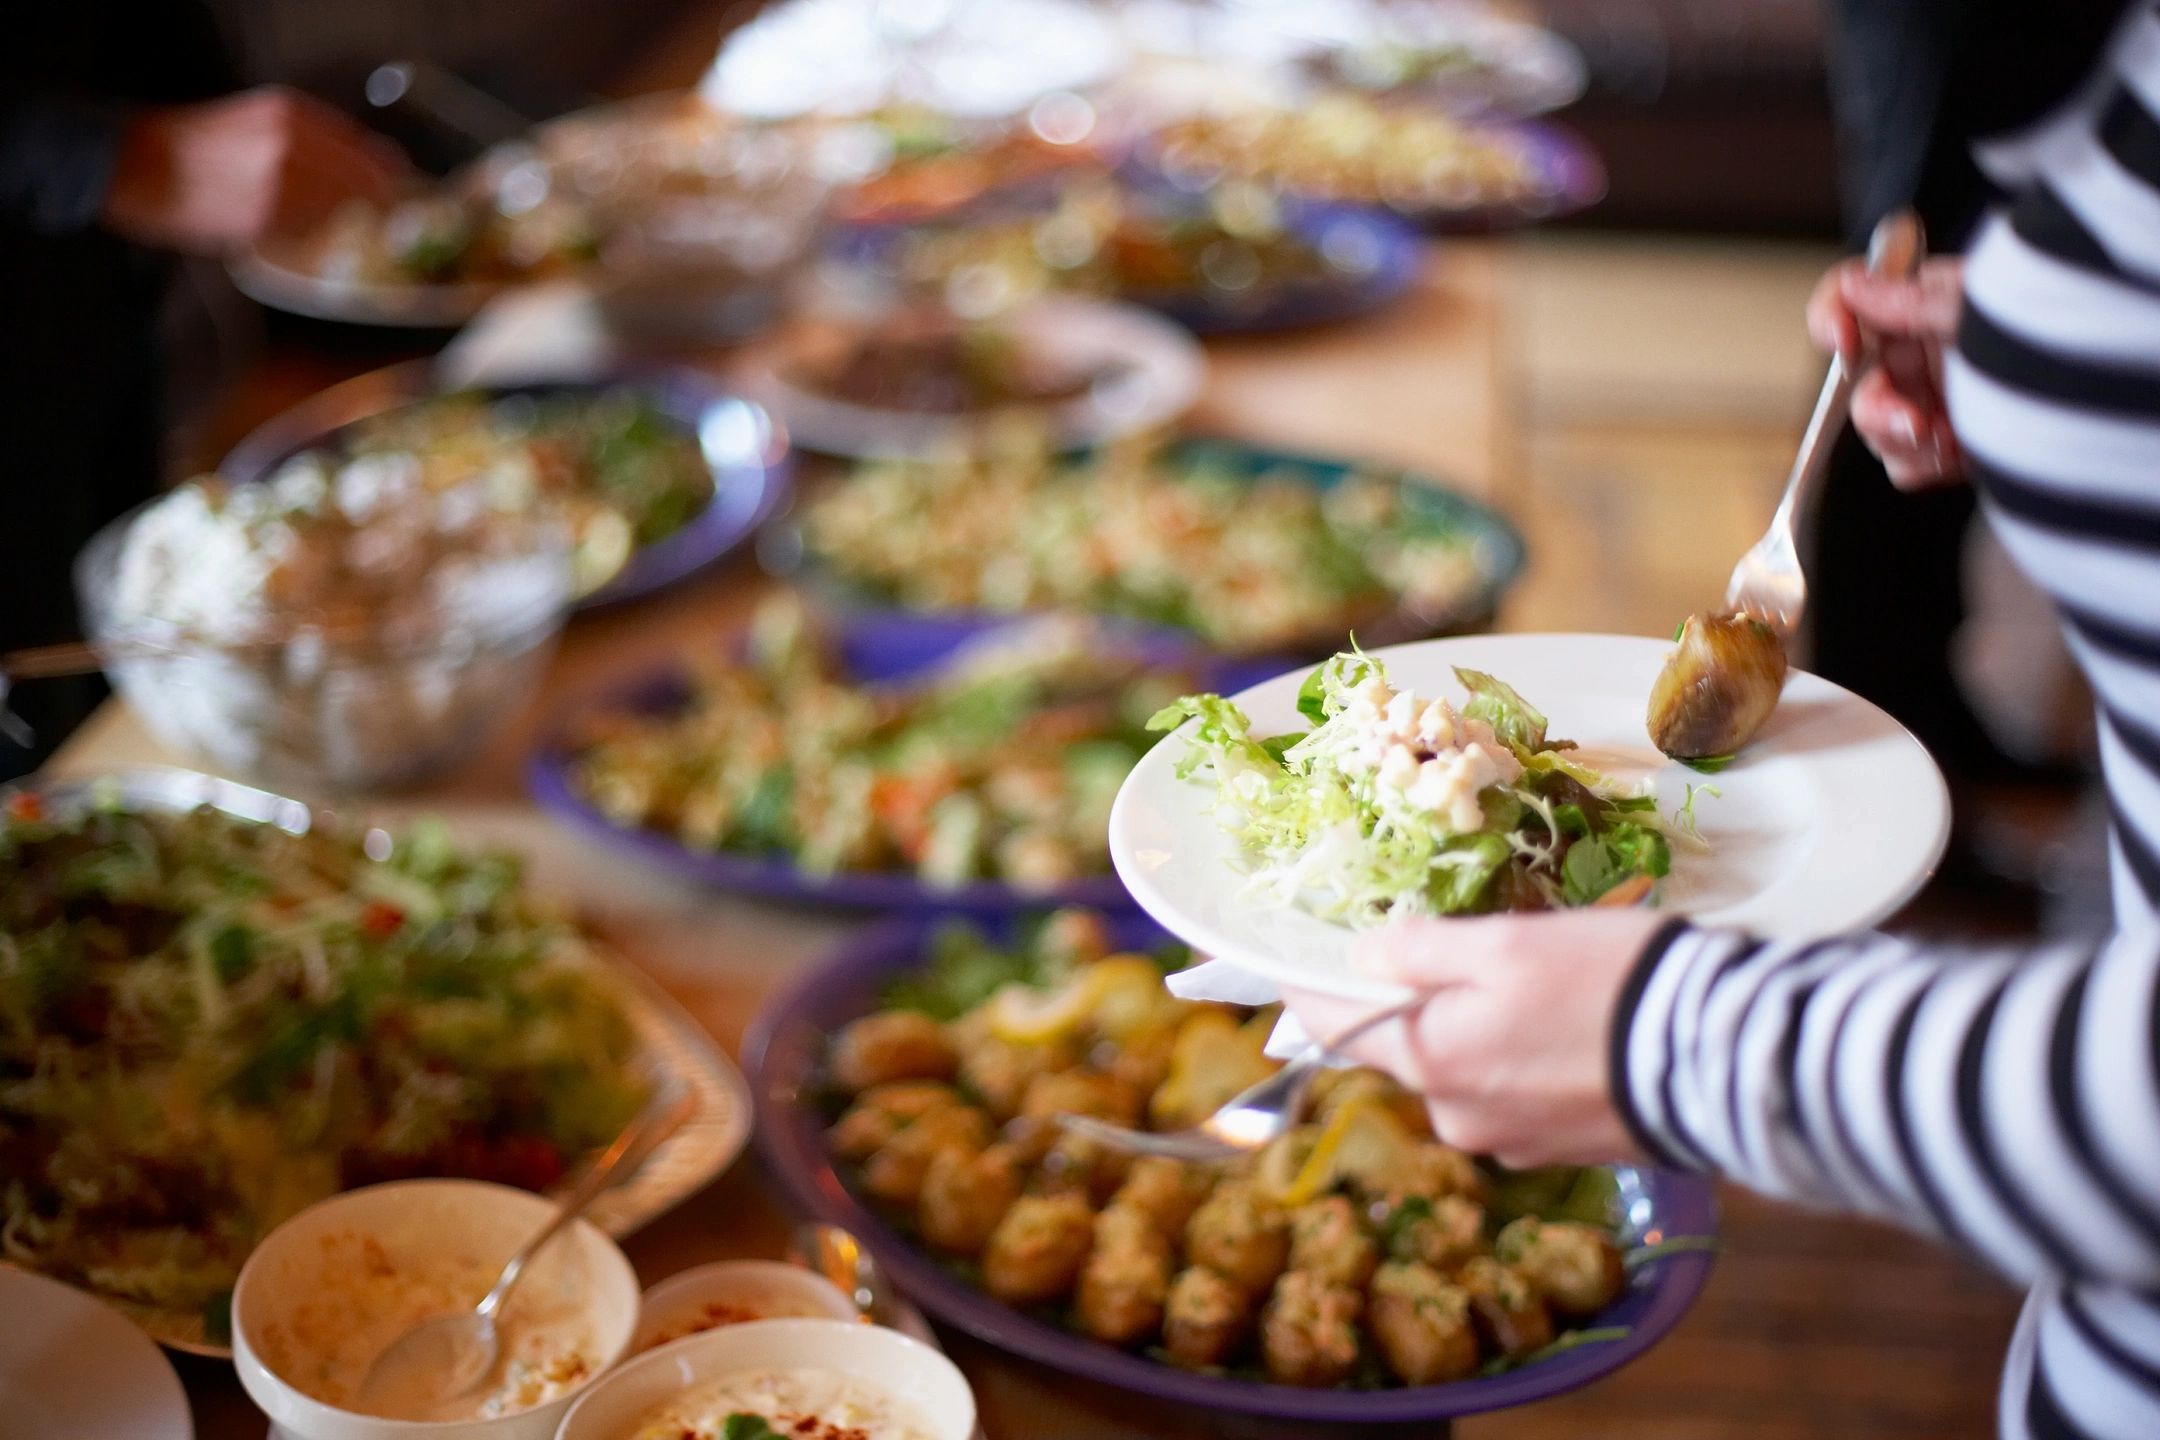 buffet of holiday food and facing eating disorders this holiday season in savannah